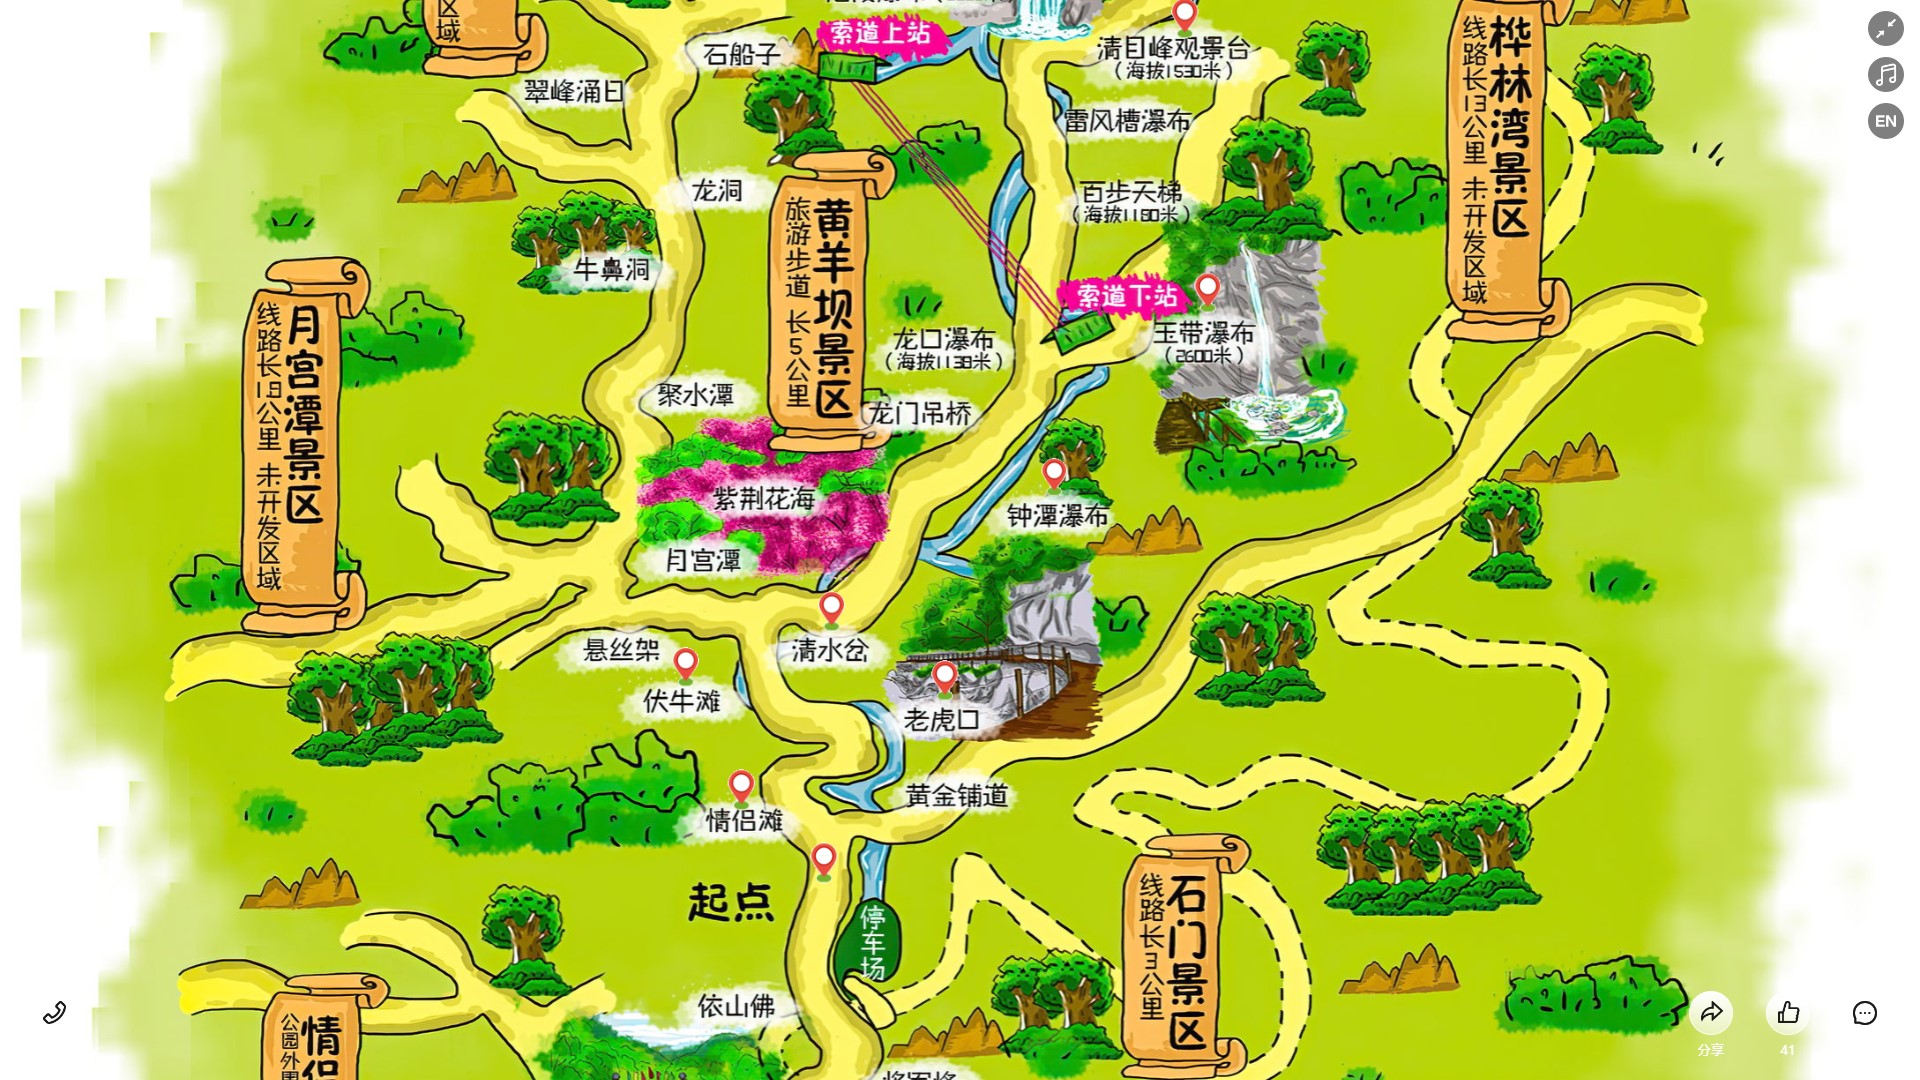 蒲县景区导览系统